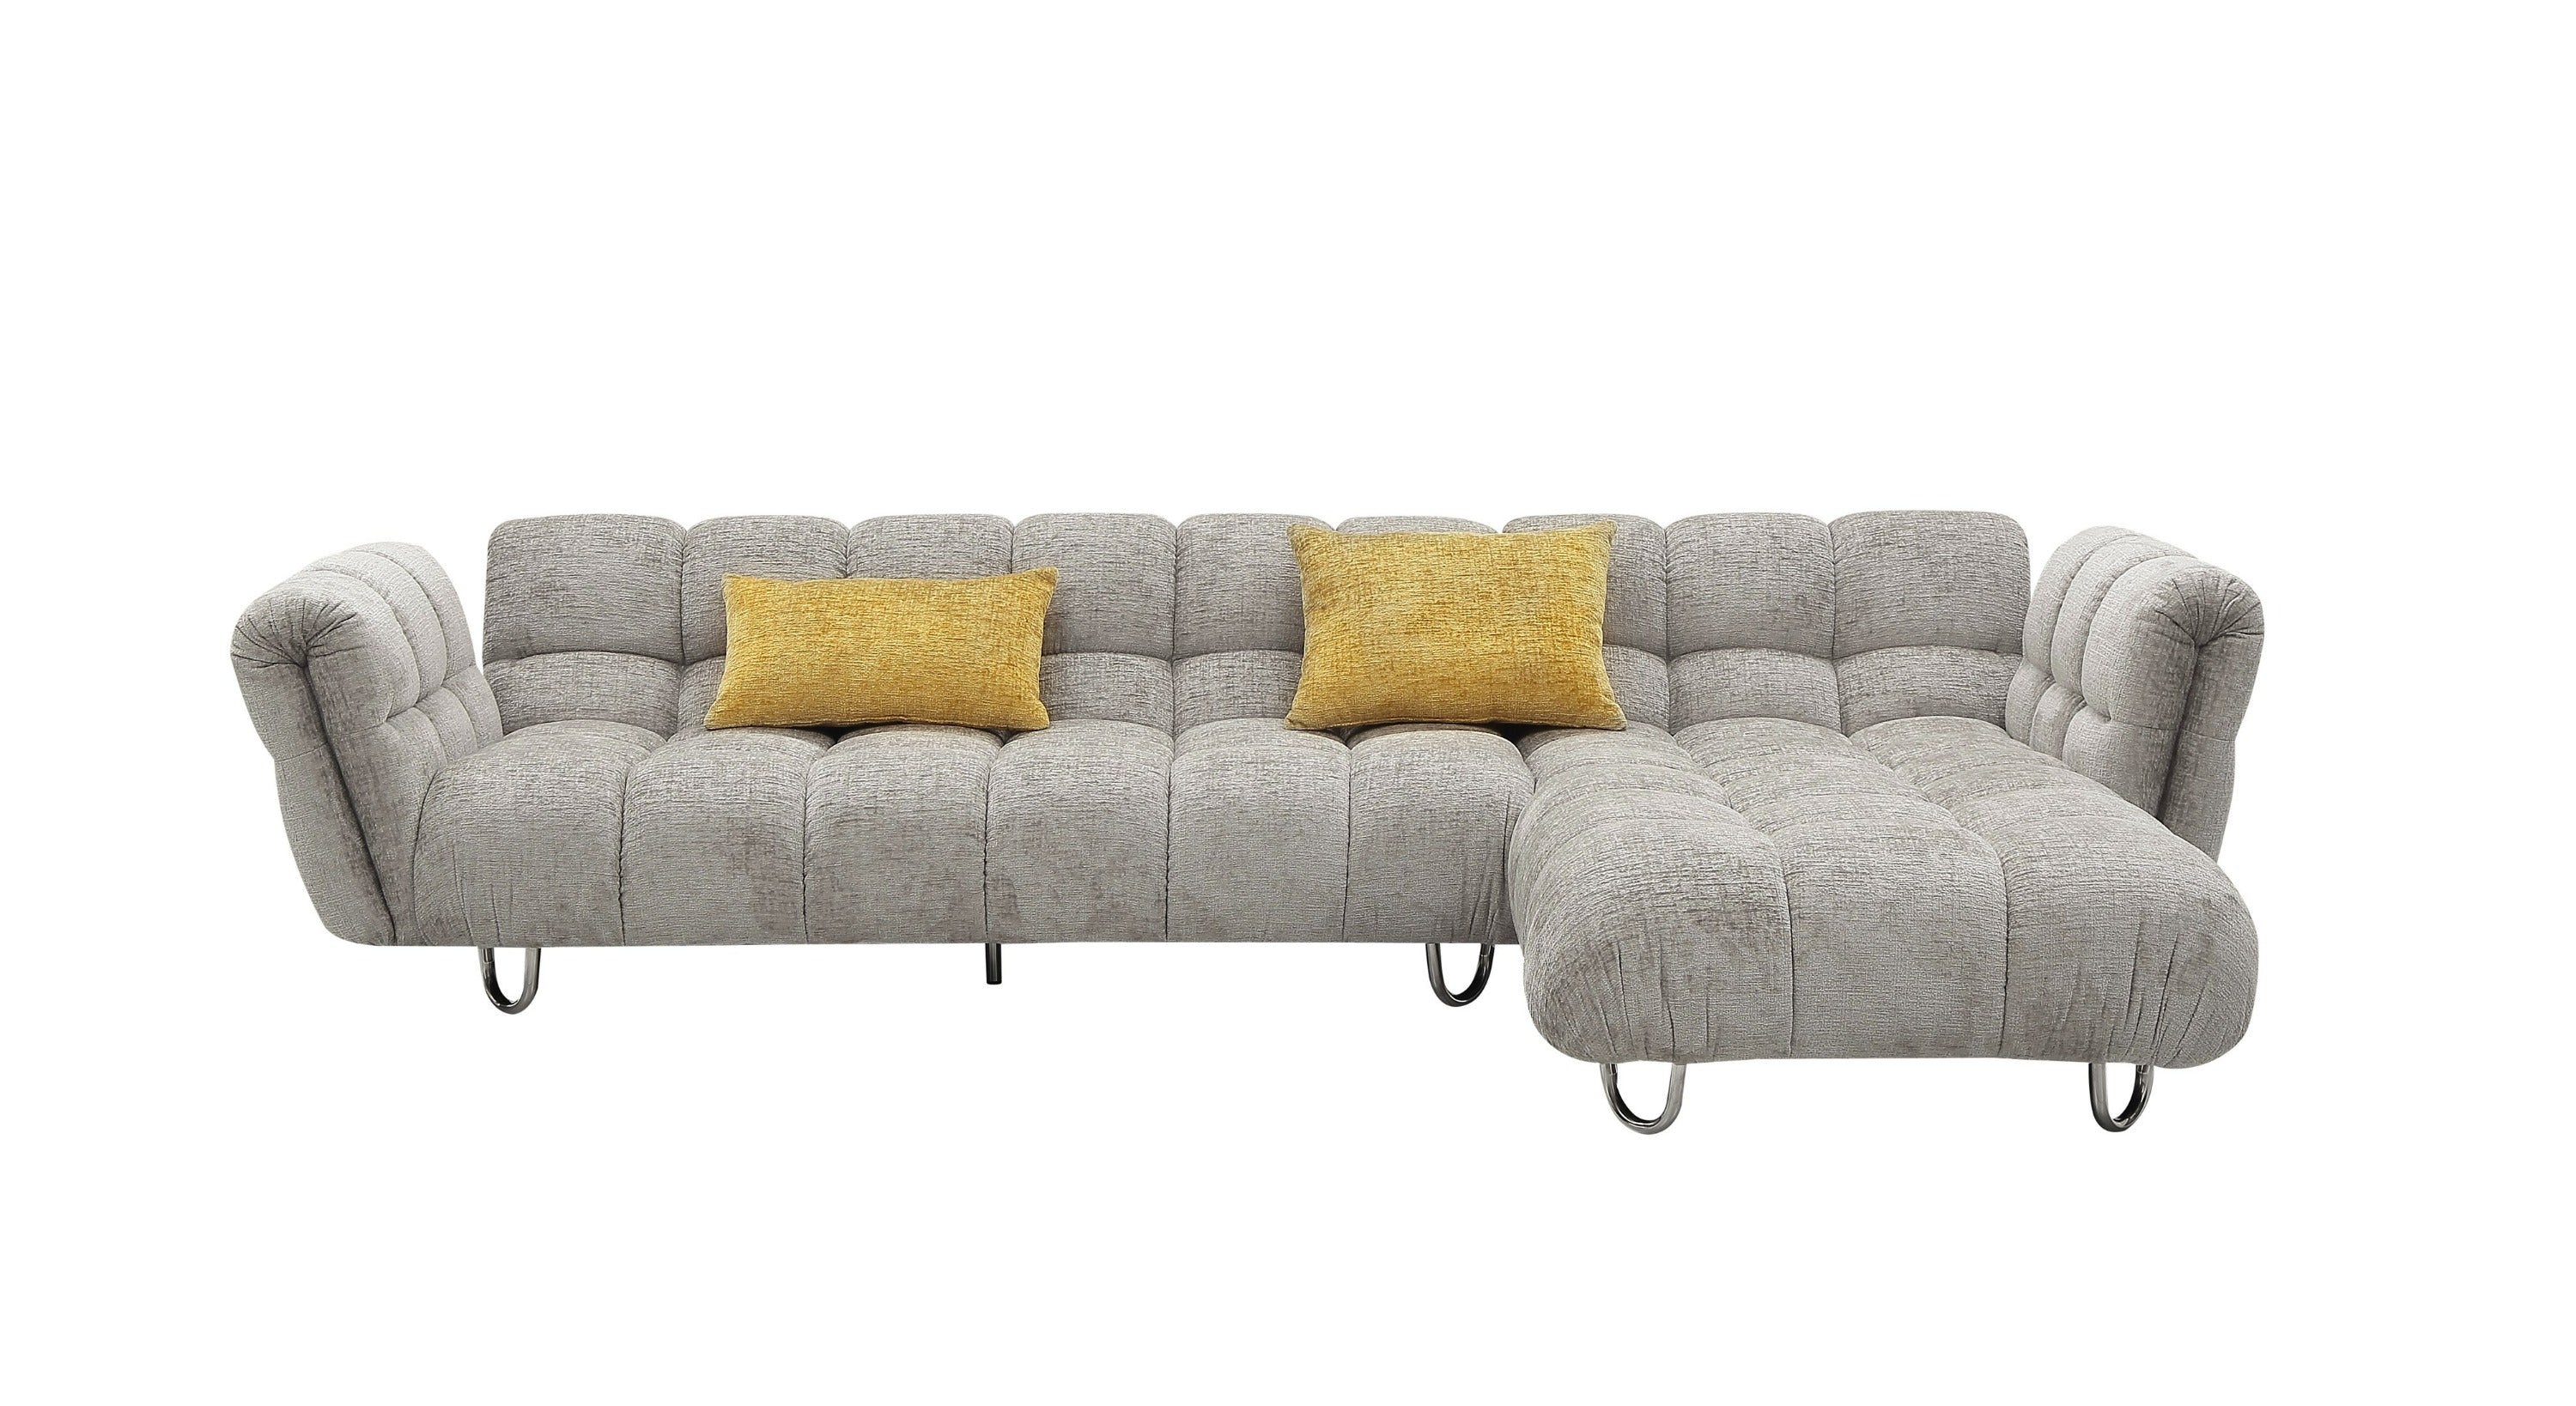 Vig Furniture Divani Casa Jacinda - Modern Grey Fabric Right Facing Sectional Sofa with 2 Yellow Pillows